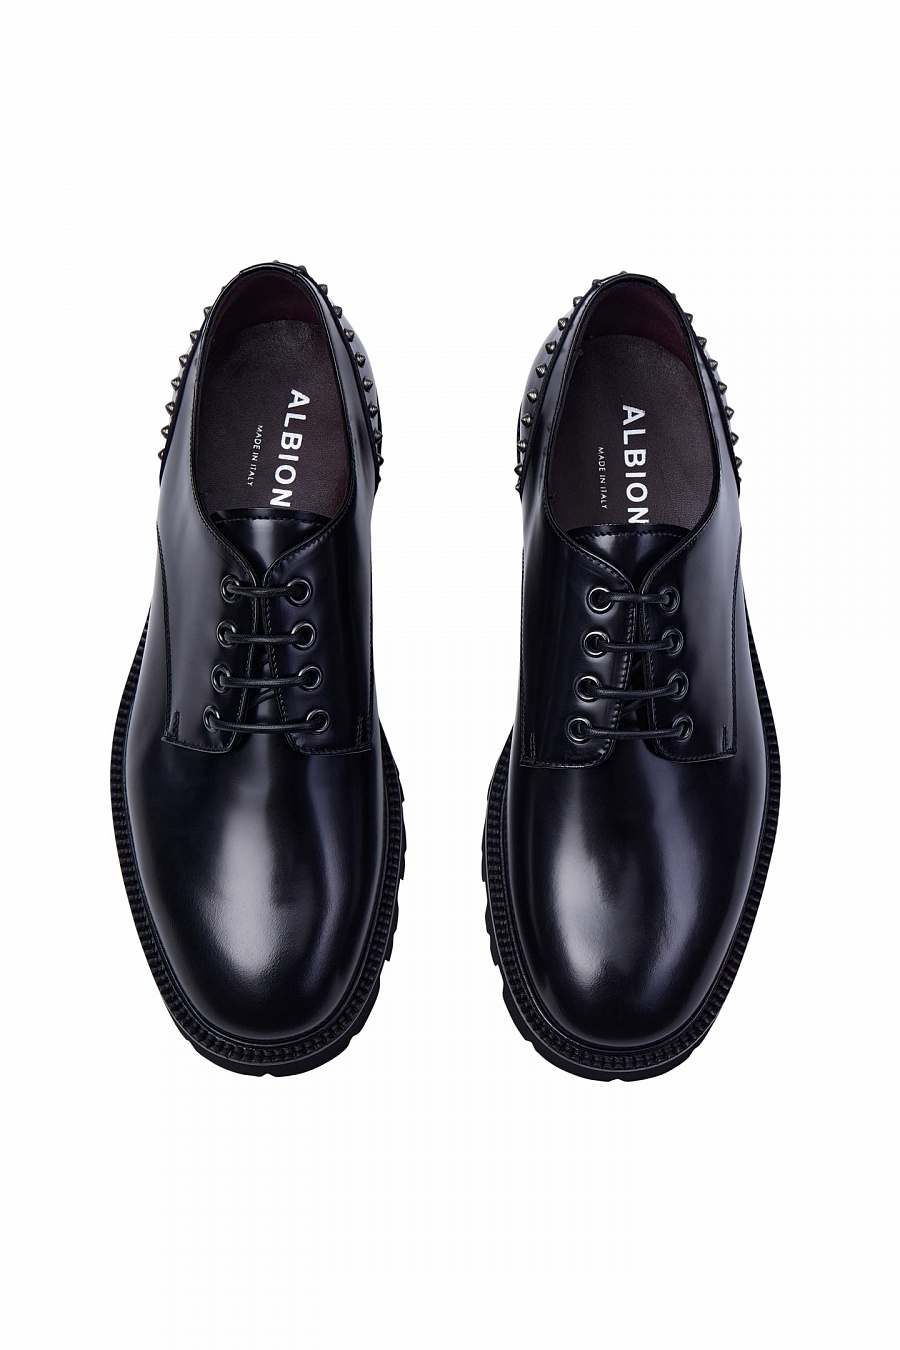 Черные ботинки с шипами 140Fw купить по цене 55 990 р. в интернет-магазинеAlbione в Москве и РФ